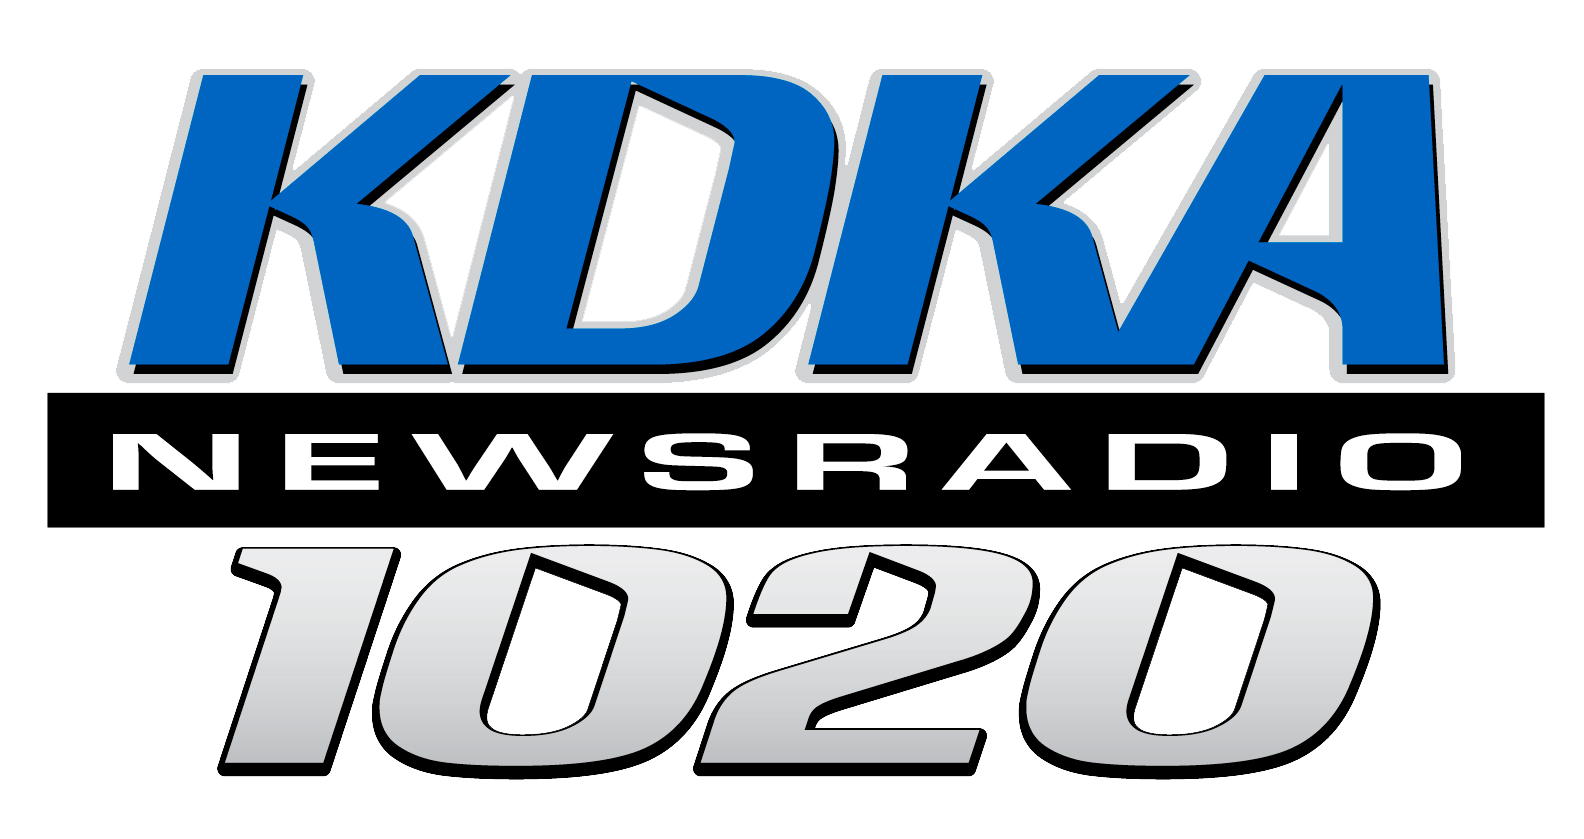 KDKA News Radio